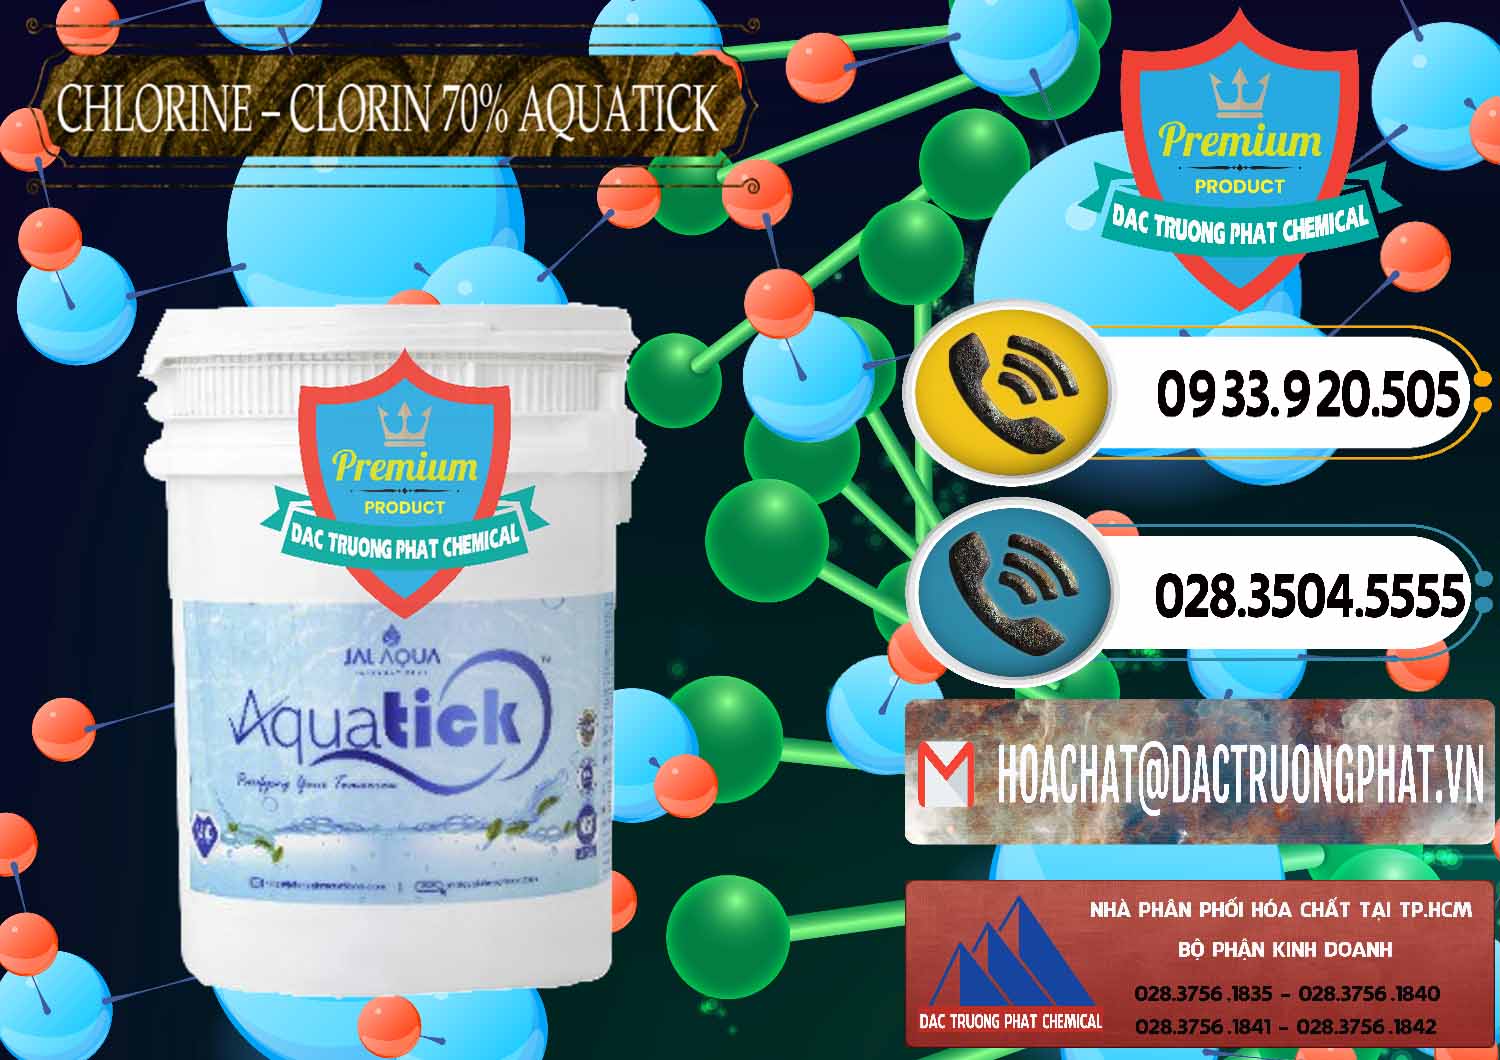 Nơi chuyên bán - cung cấp Chlorine – Clorin 70% Aquatick Thùng Cao Jal Aqua Ấn Độ India - 0237 - Đơn vị chuyên cung cấp ( bán ) hóa chất tại TP.HCM - hoachatdetnhuom.vn